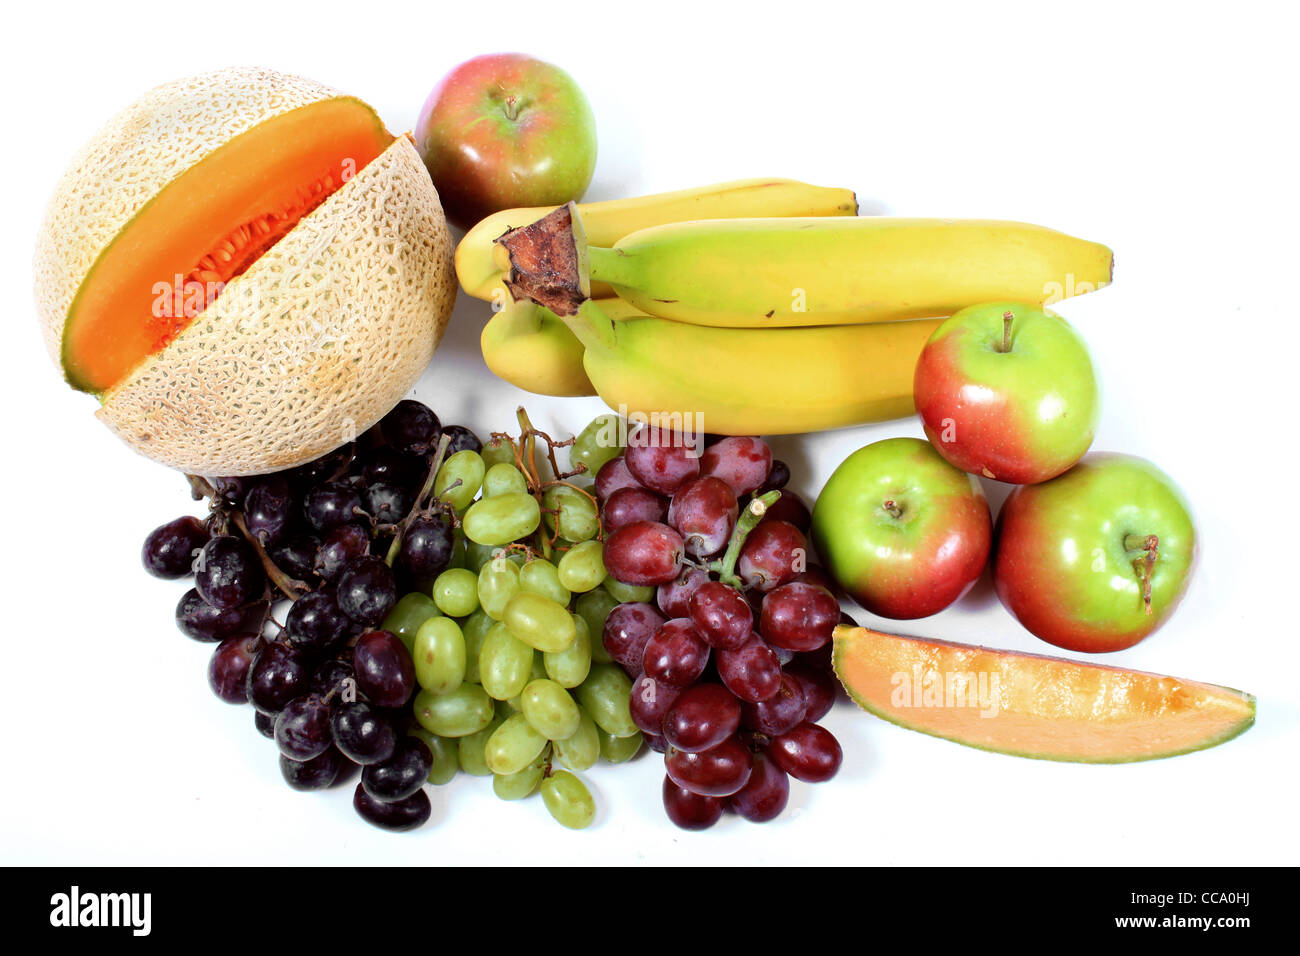 Les fruits colorés comme les raisins, pommes,cantaloup,et raisins sur un fond blanc Banque D'Images